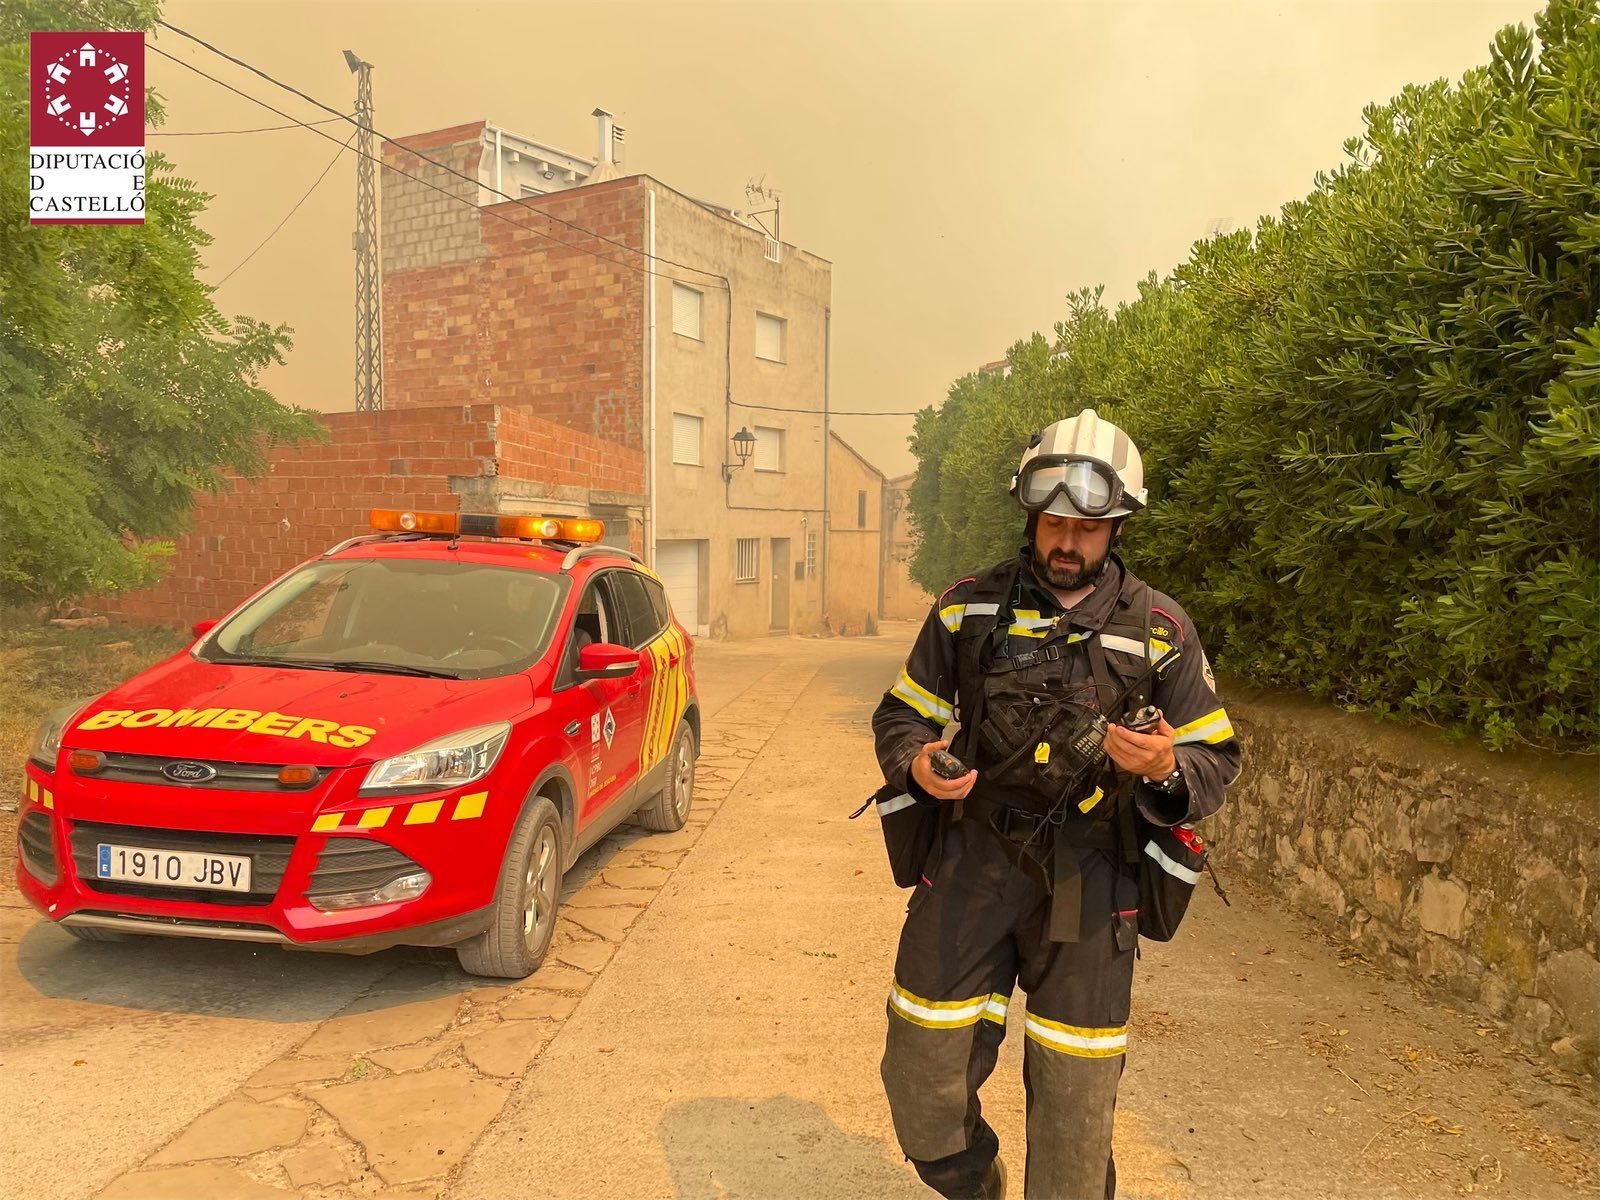 Galería: Las imágenes del incendio forestal de Caudiel